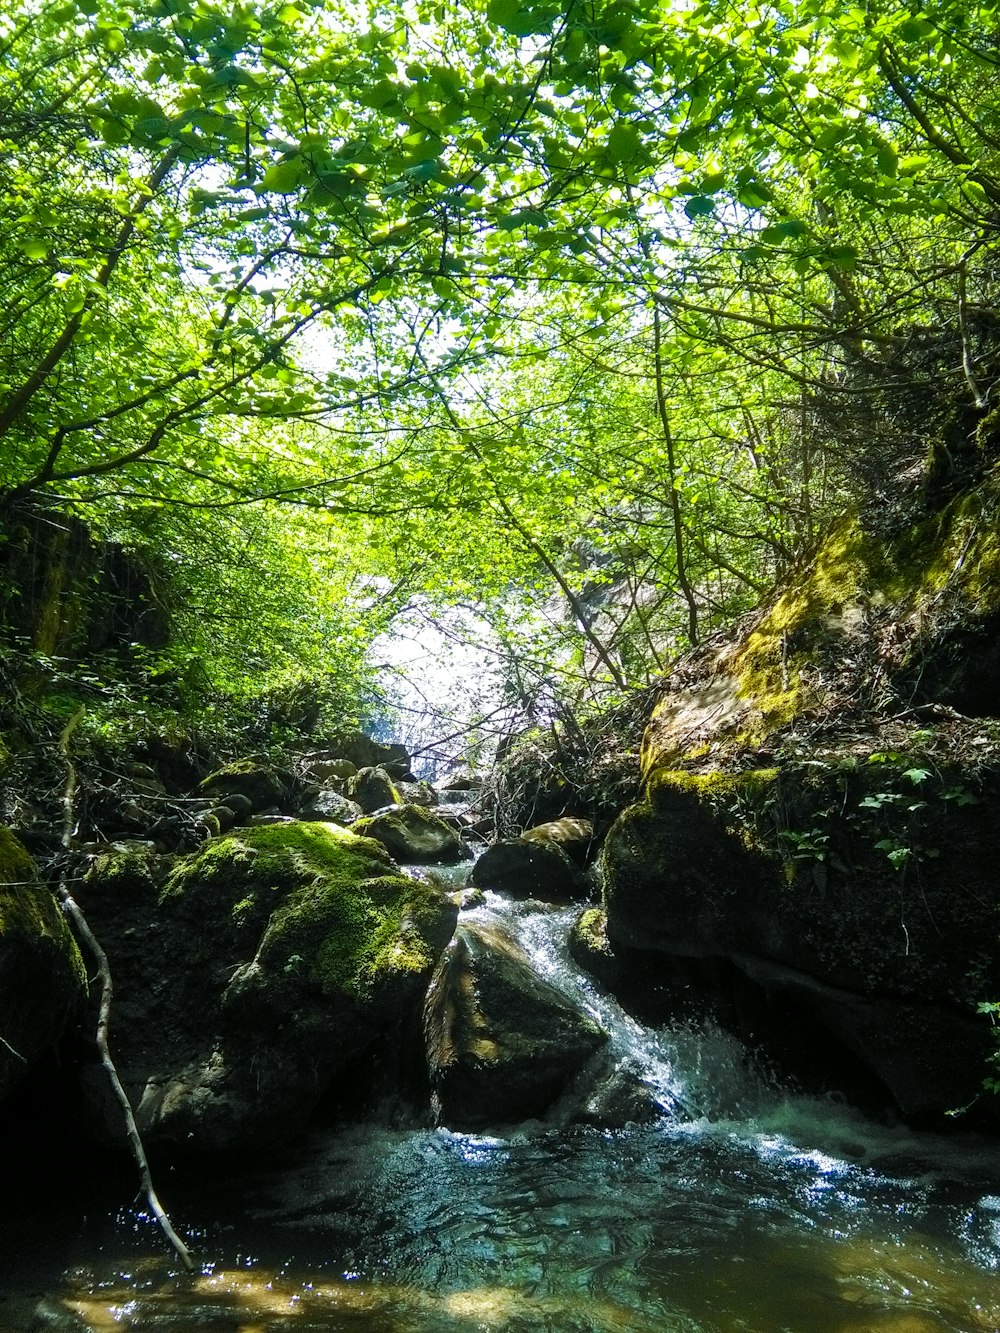 green moss on rocks in river